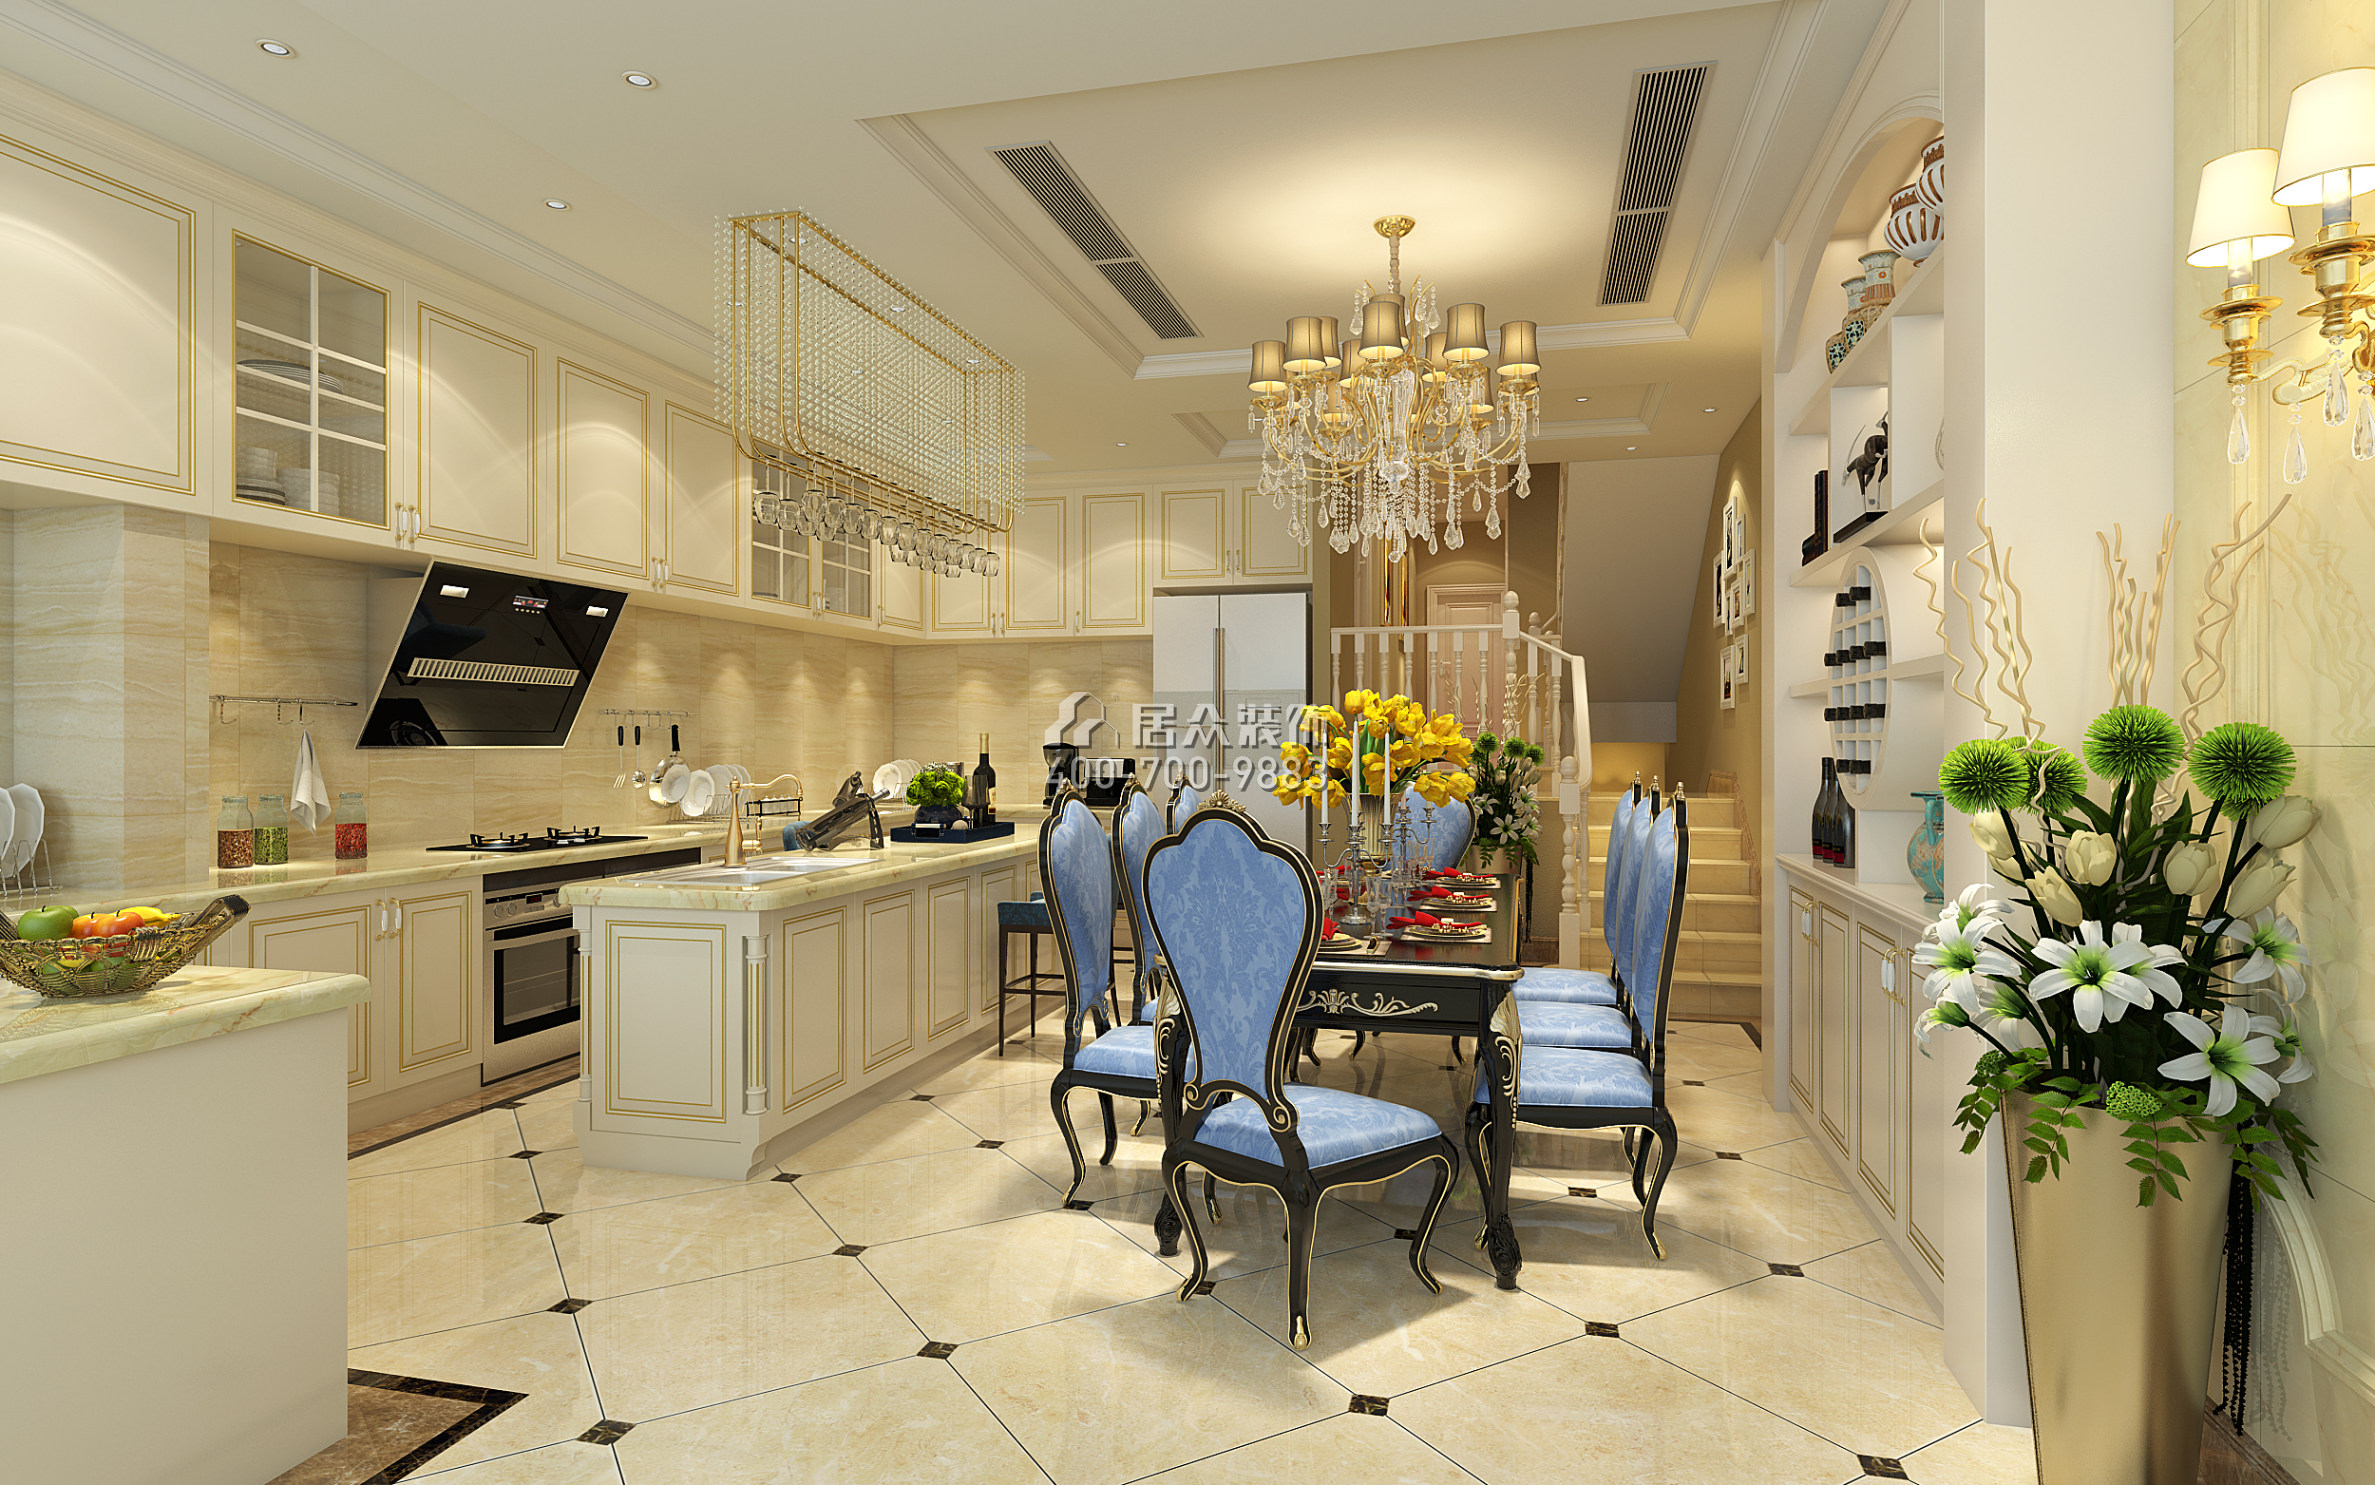 慶隆高爾夫鉆石島360平方米歐式風格別墅戶型廚房裝修效果圖